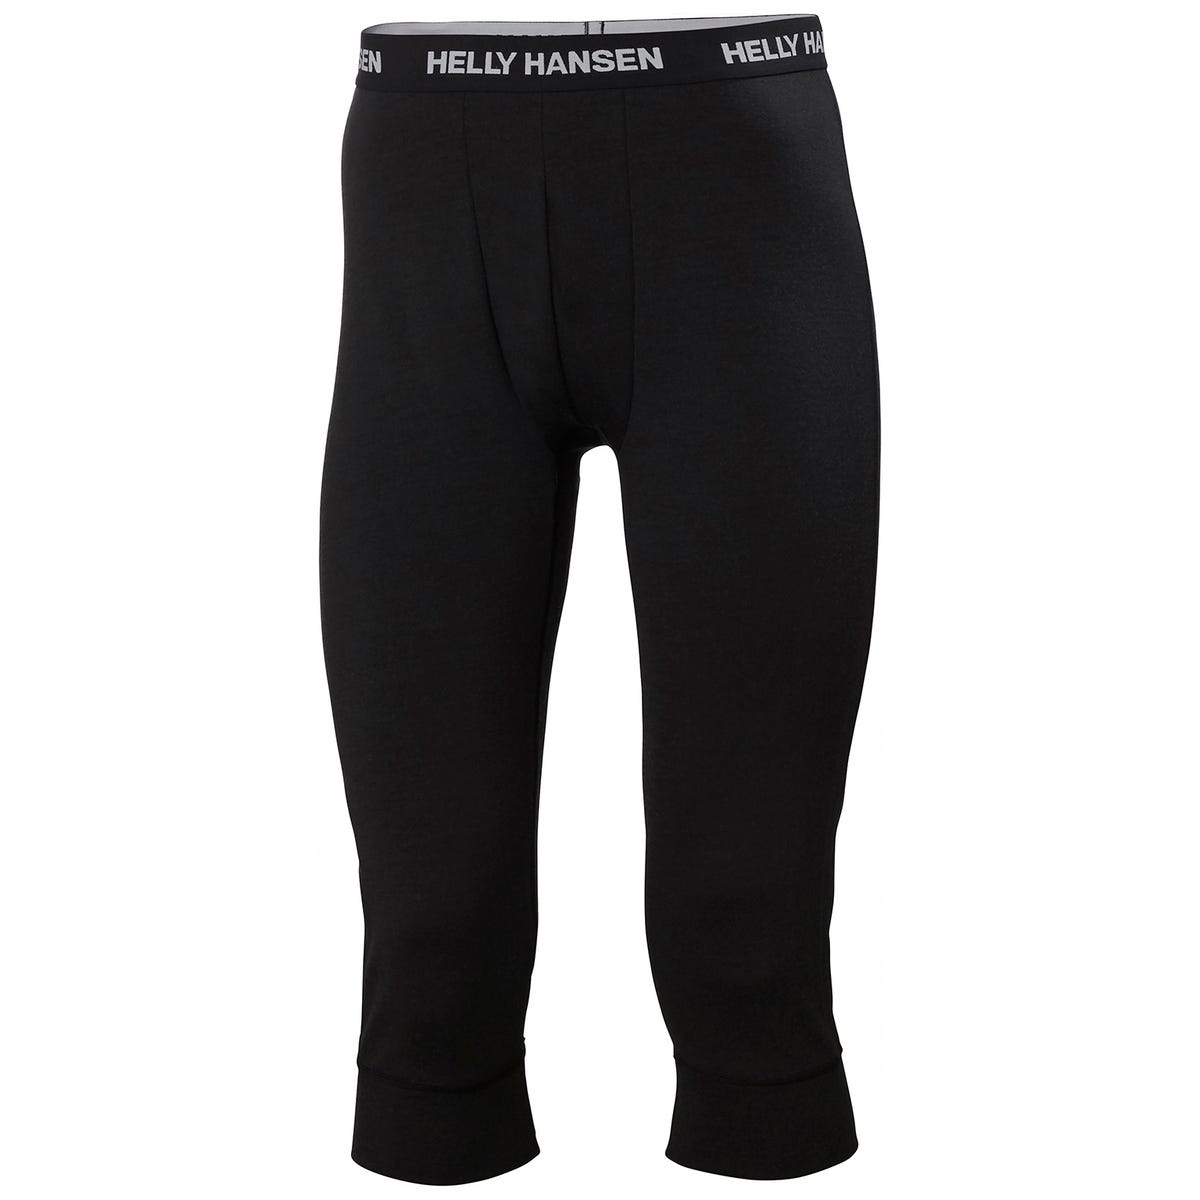 Helly Hansen Men's Lifa Merino Midweight 3/4 Pant